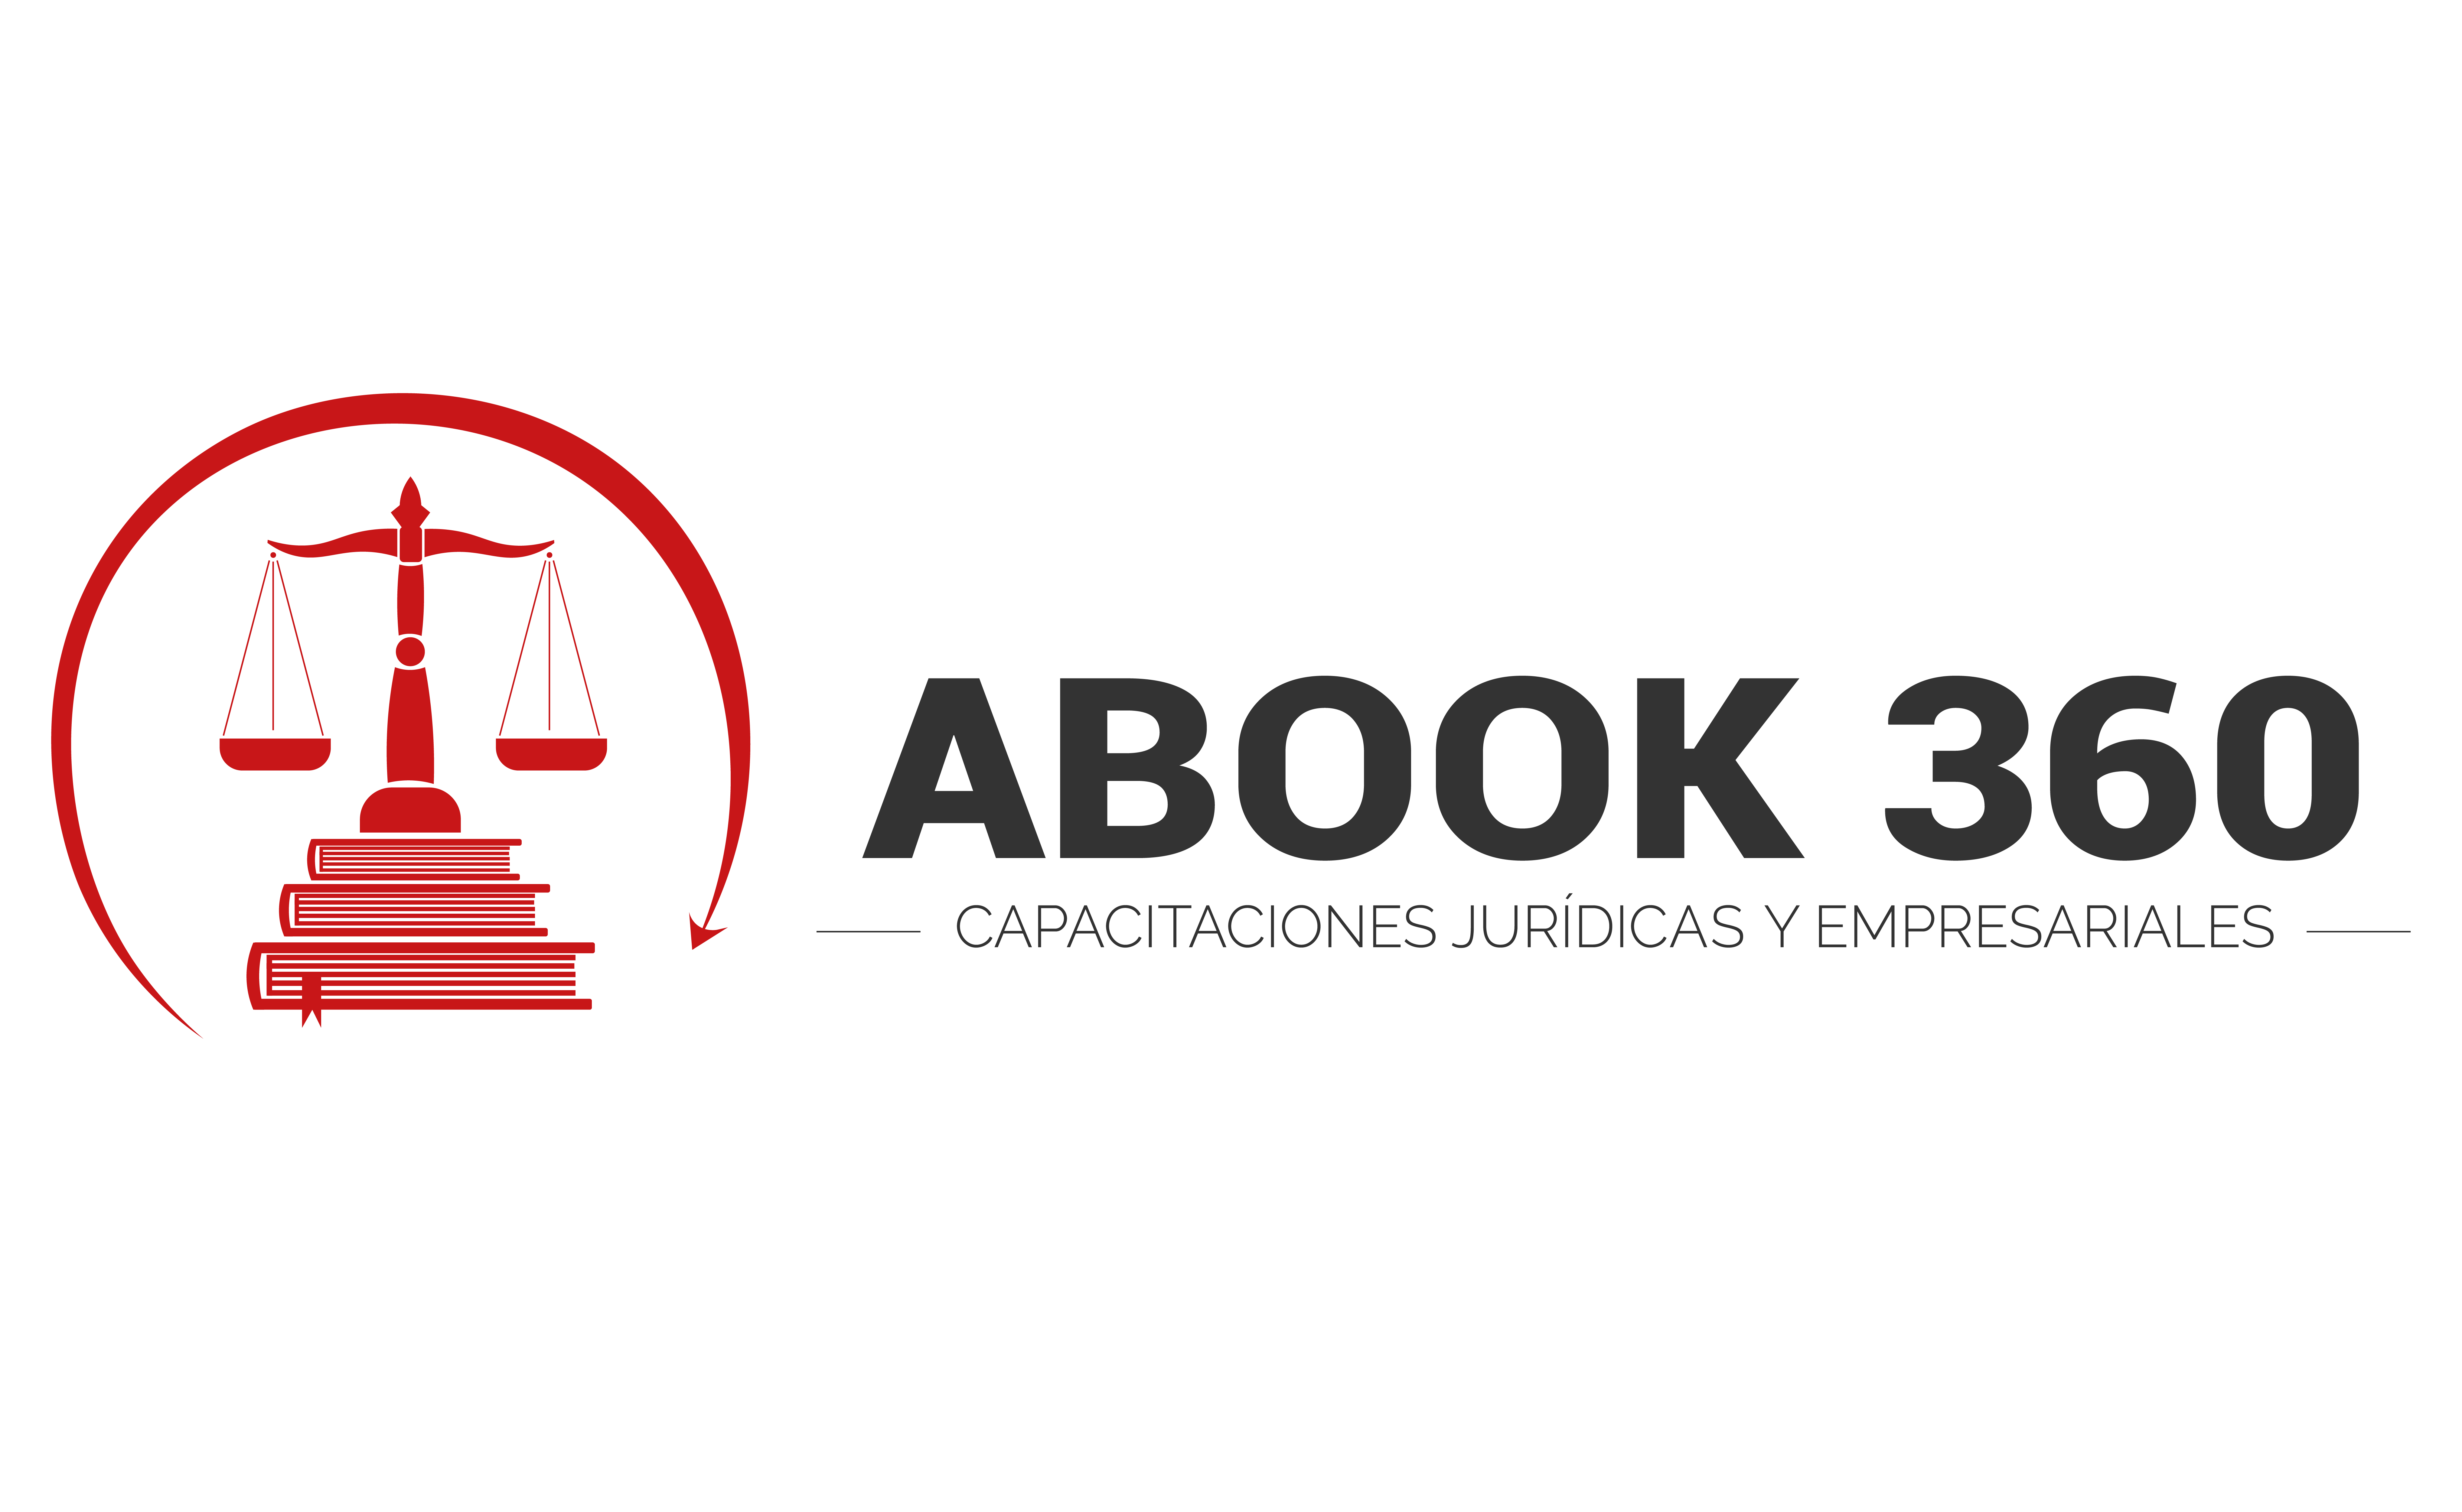 Abook360